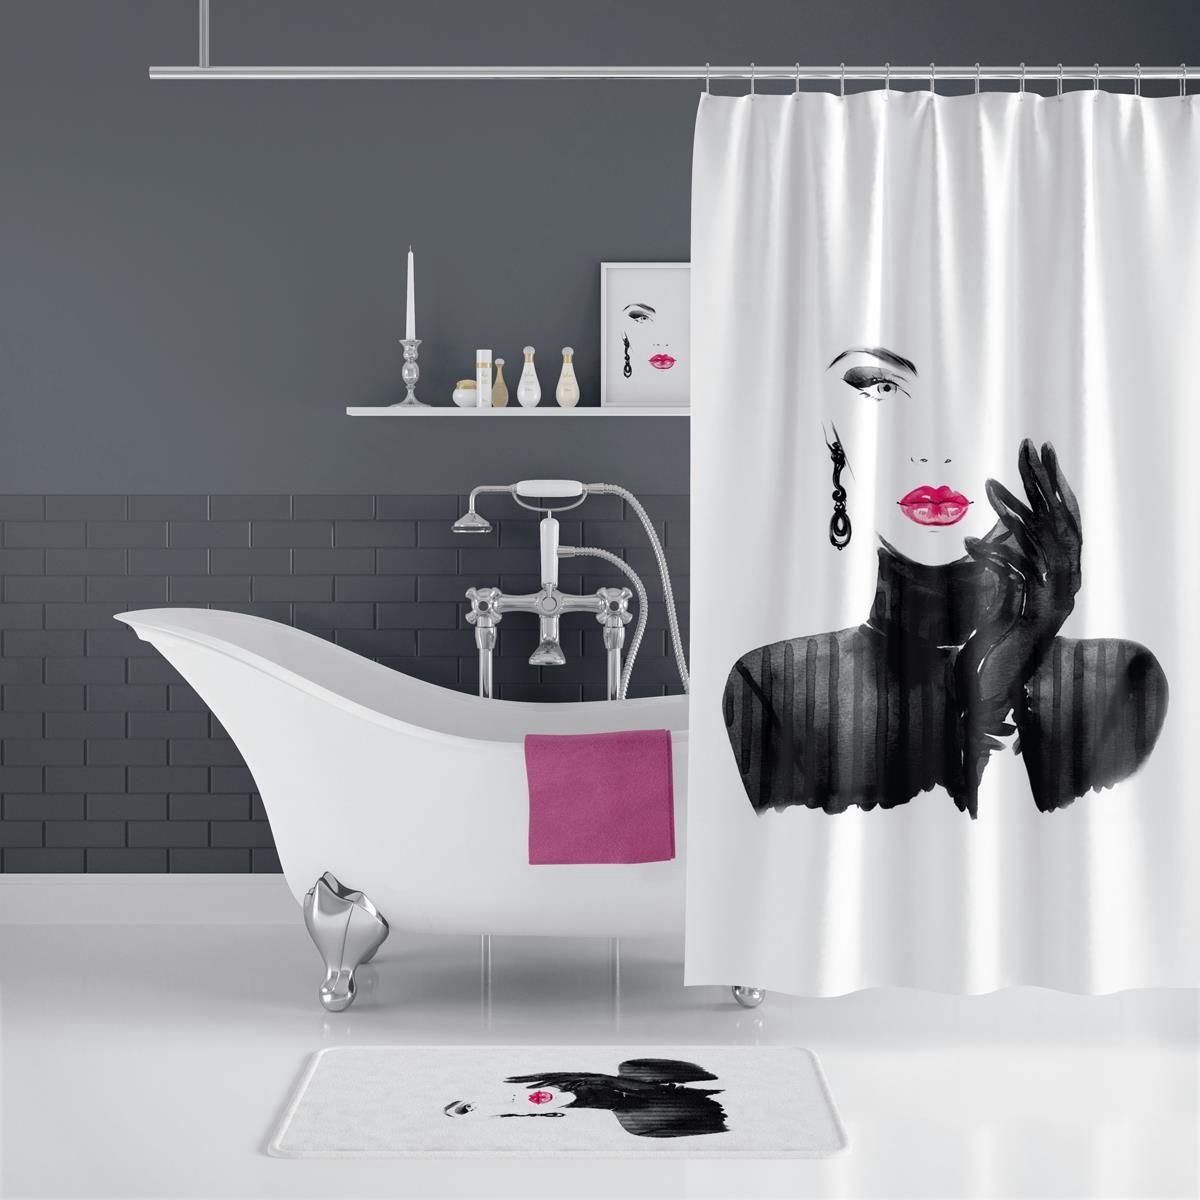 Casabueno - Douchegordijn - 180x200 cm - Digitaal Printen - Badkamer Gordijn - Shower Curtain - Waterdicht - Sneldrogend en Anti Schimmel -Wasbaar en Duurzaam - Pretty - Wit